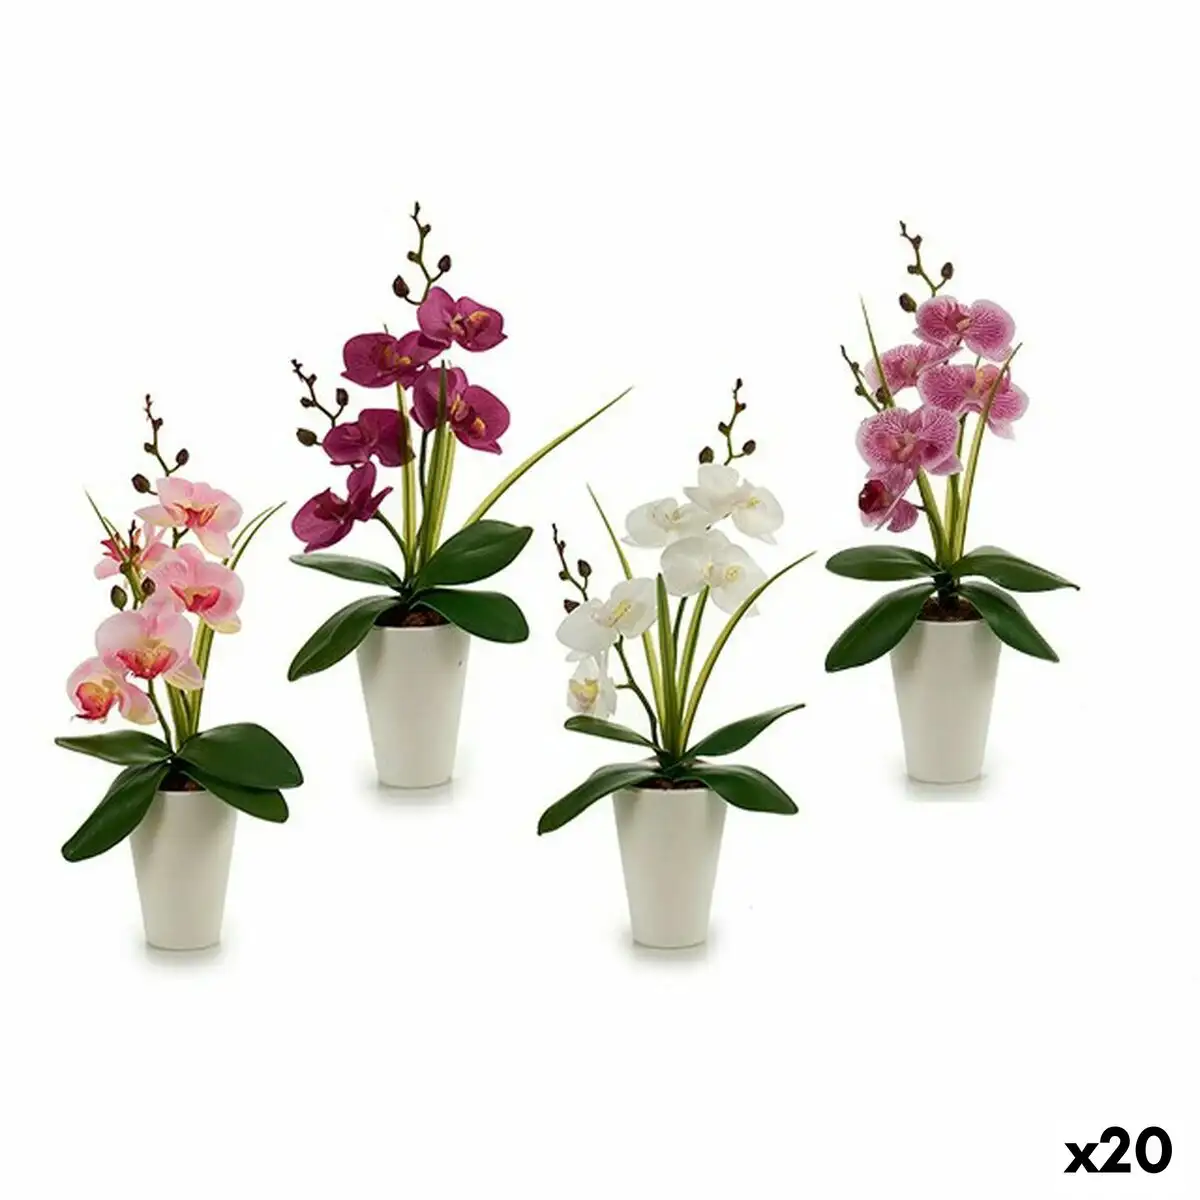 Fleur decorative orchidee plastique 14 x 35 x 8 cm 12 unites _8119. DIAYTAR SENEGAL - Votre Marché Virtuel au Sénégal. Parcourez notre boutique en ligne pour trouver des trésors cachés, des articles indispensables du quotidien aux joyaux artistiques.